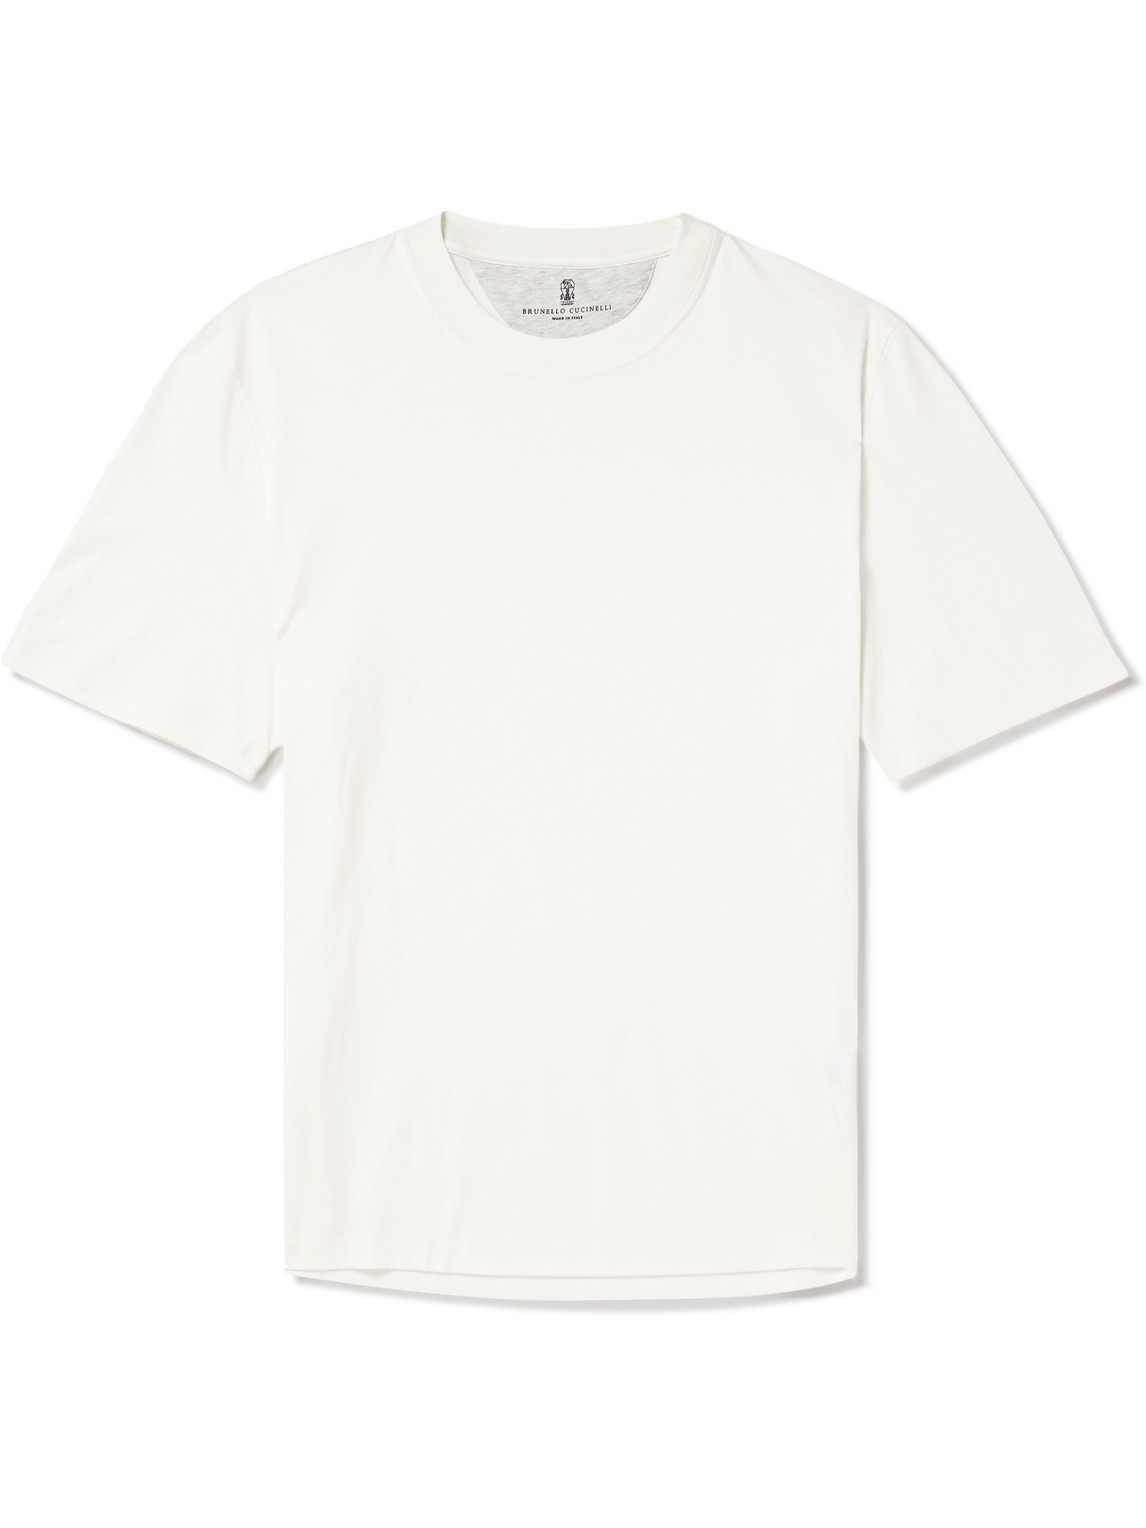 Brunello Cucinelli - Cotton-Jersey T-Shirt - Men - White - L von Brunello Cucinelli